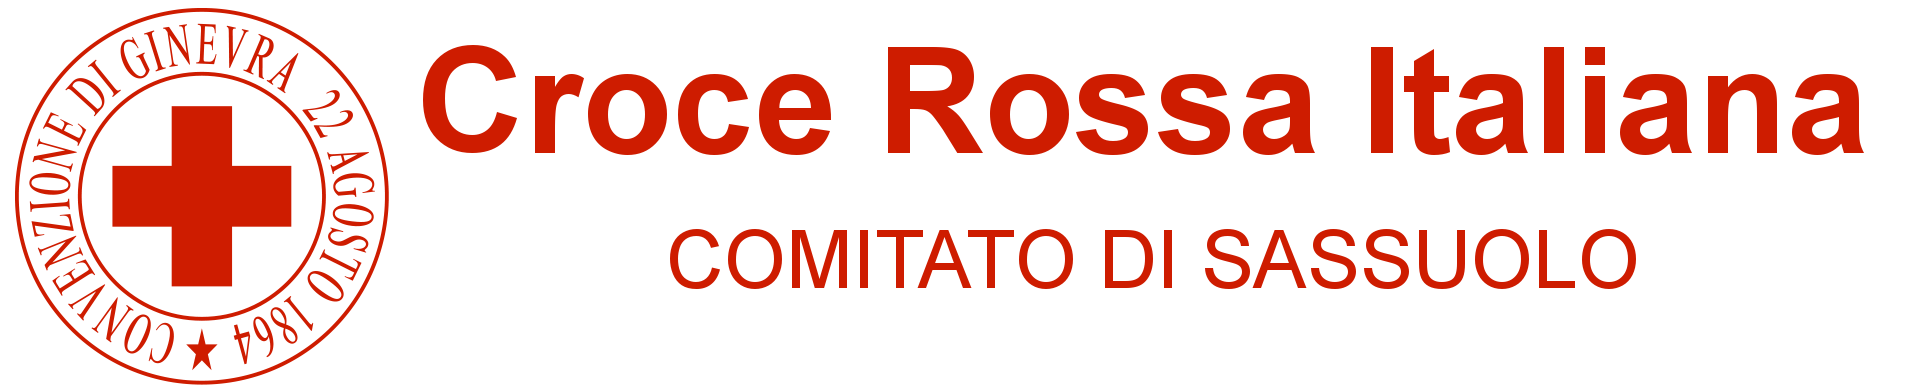 Croce Rossa Italiana - Comitato di Sassuolo